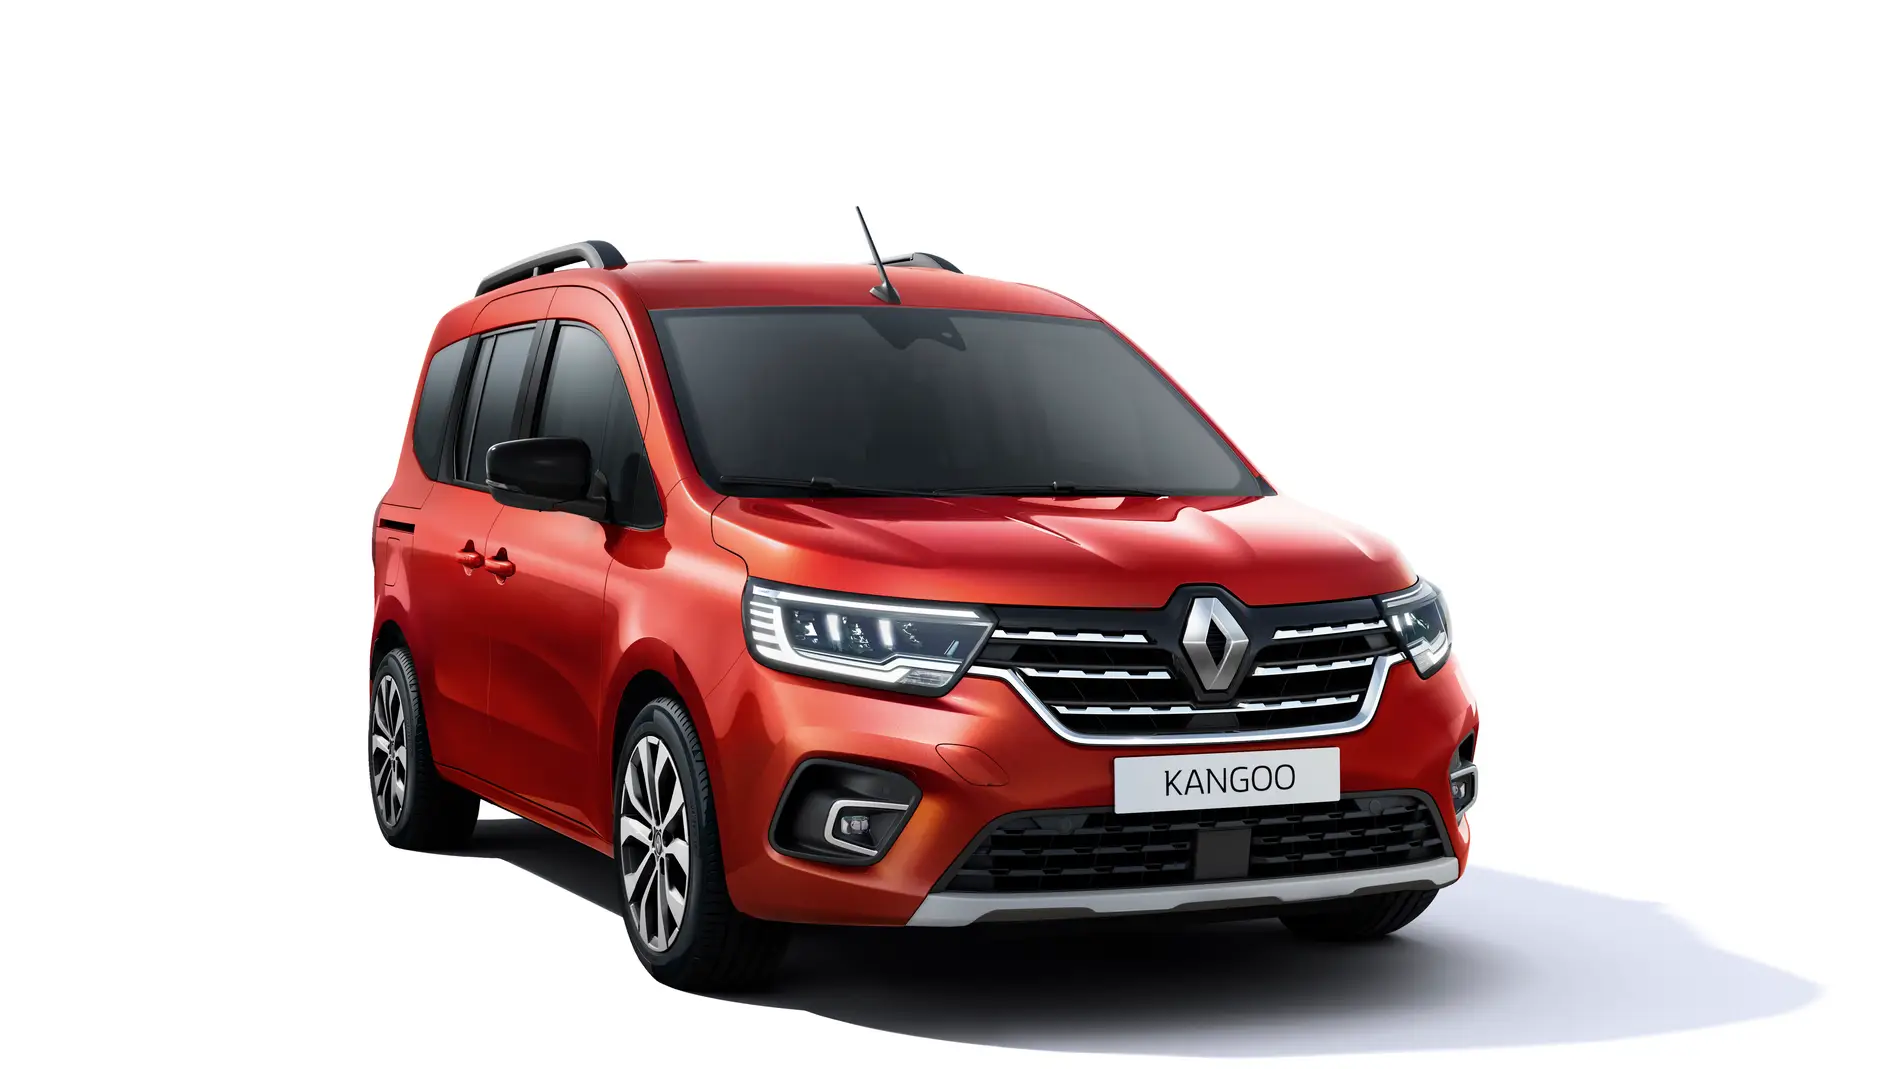 Con la nueva Renault Kangoo, la marca francesa ha optado por un diseño más elaborado